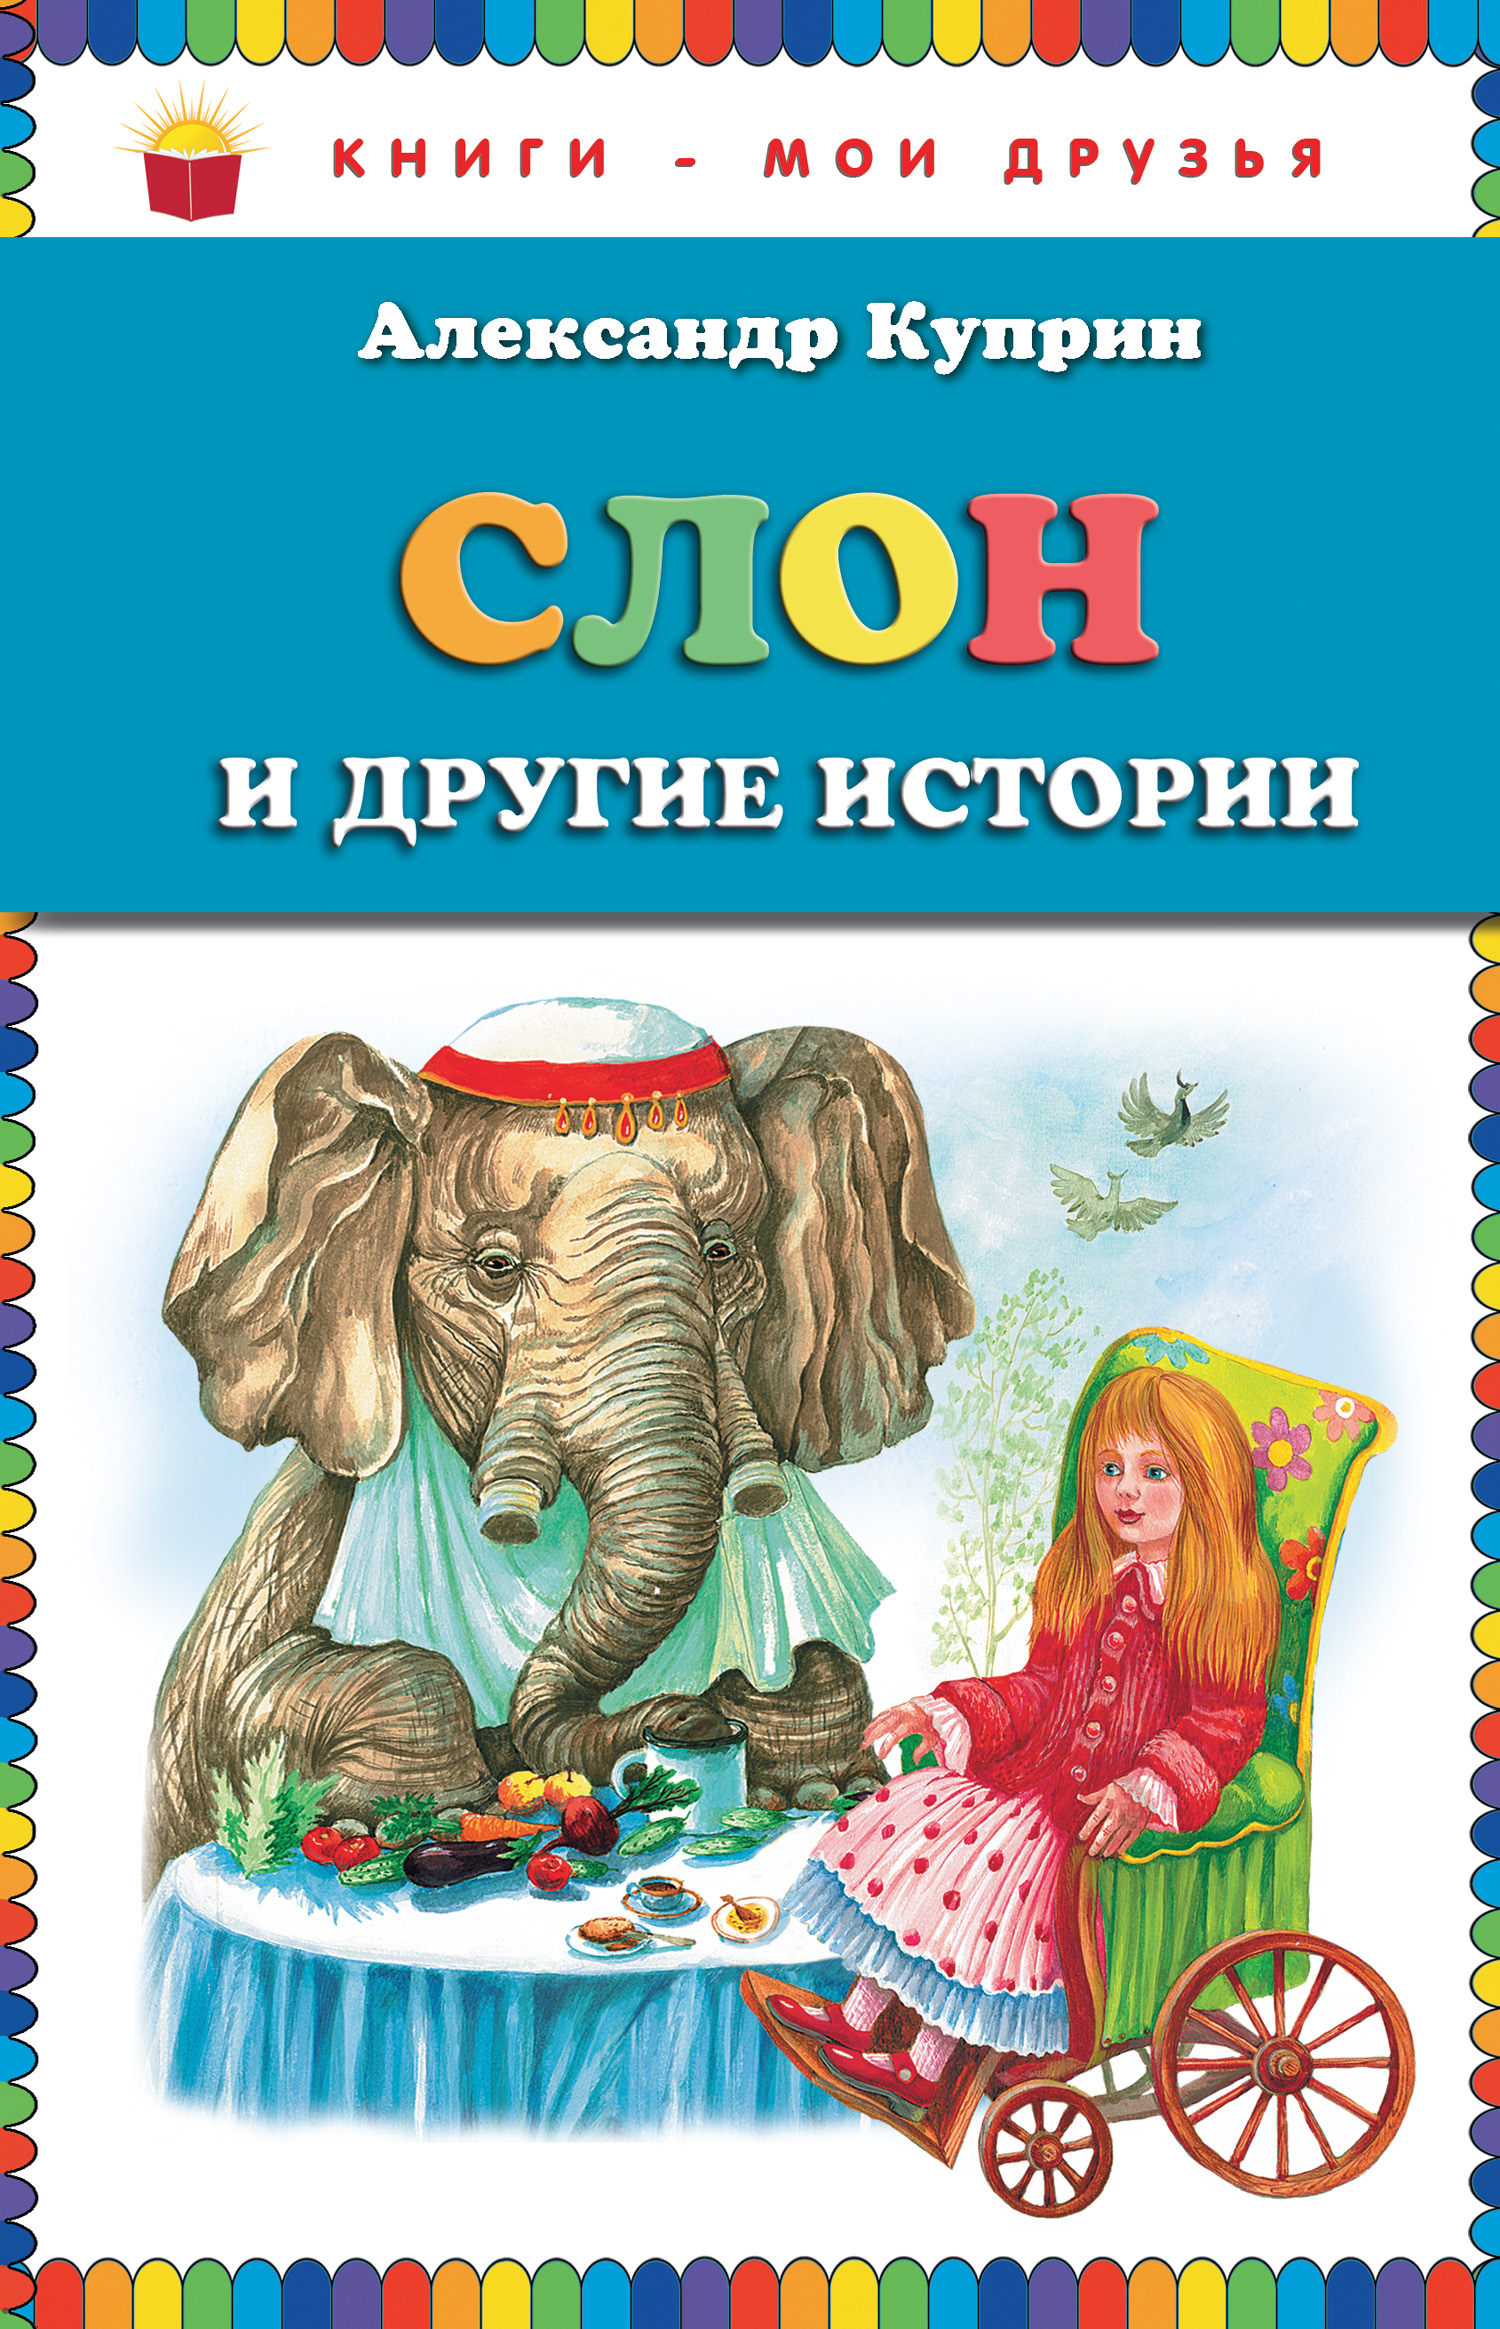 Слон и другие истории (сборник)